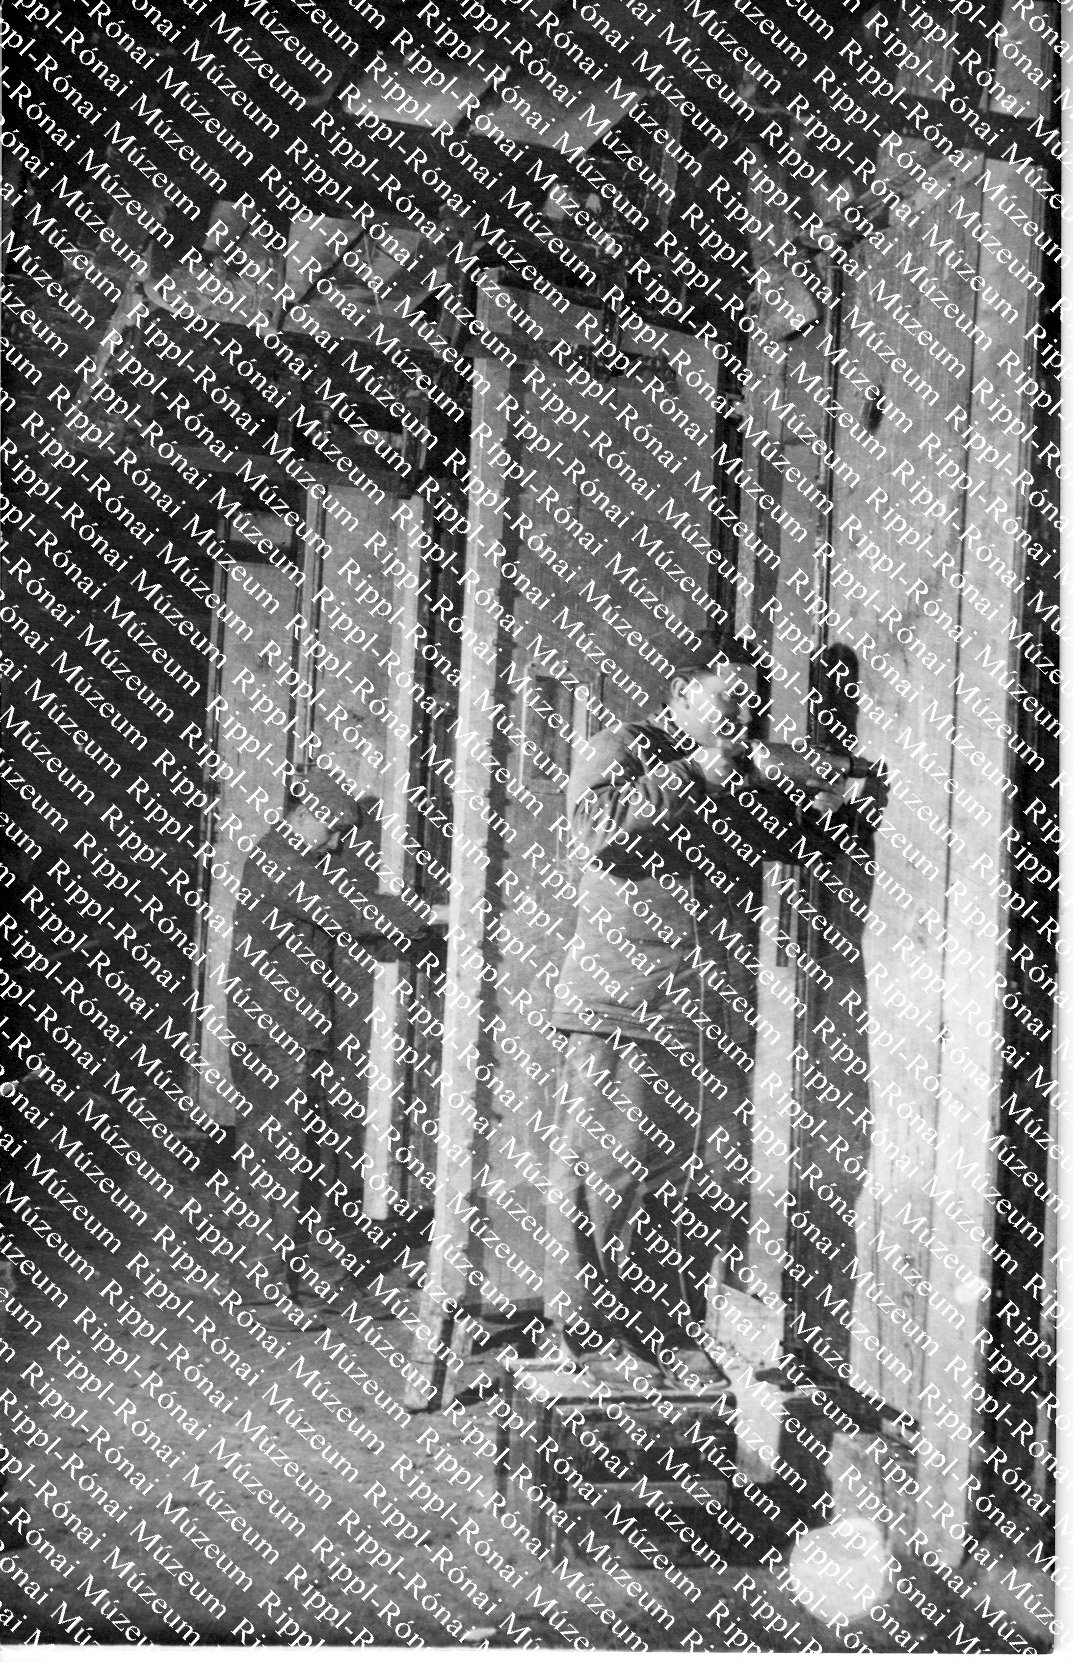 Automata főző és füstölő szekrényeket szerelnek fel az új Húsüzemben (Rippl-Rónai Múzeum CC BY-NC-SA)